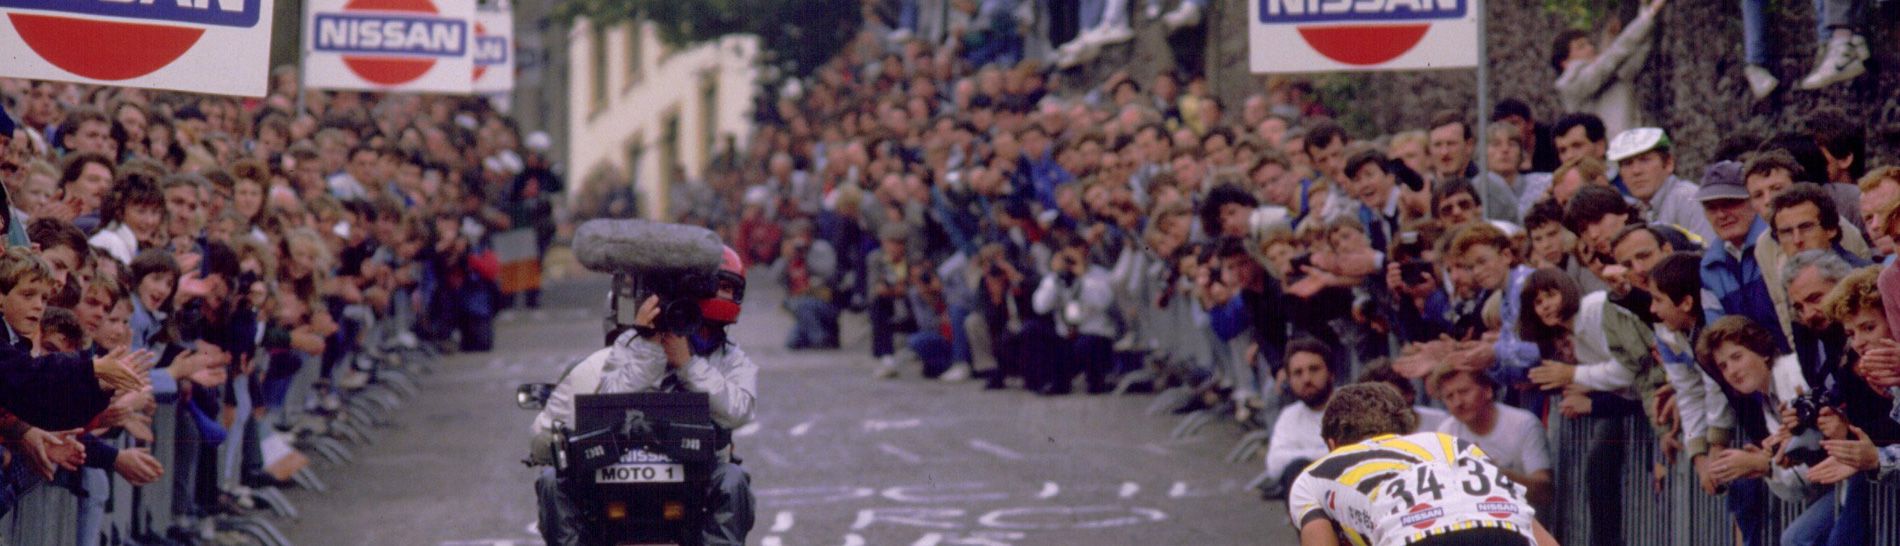 Tour of Ireland: Tour de France style crowds of spectators